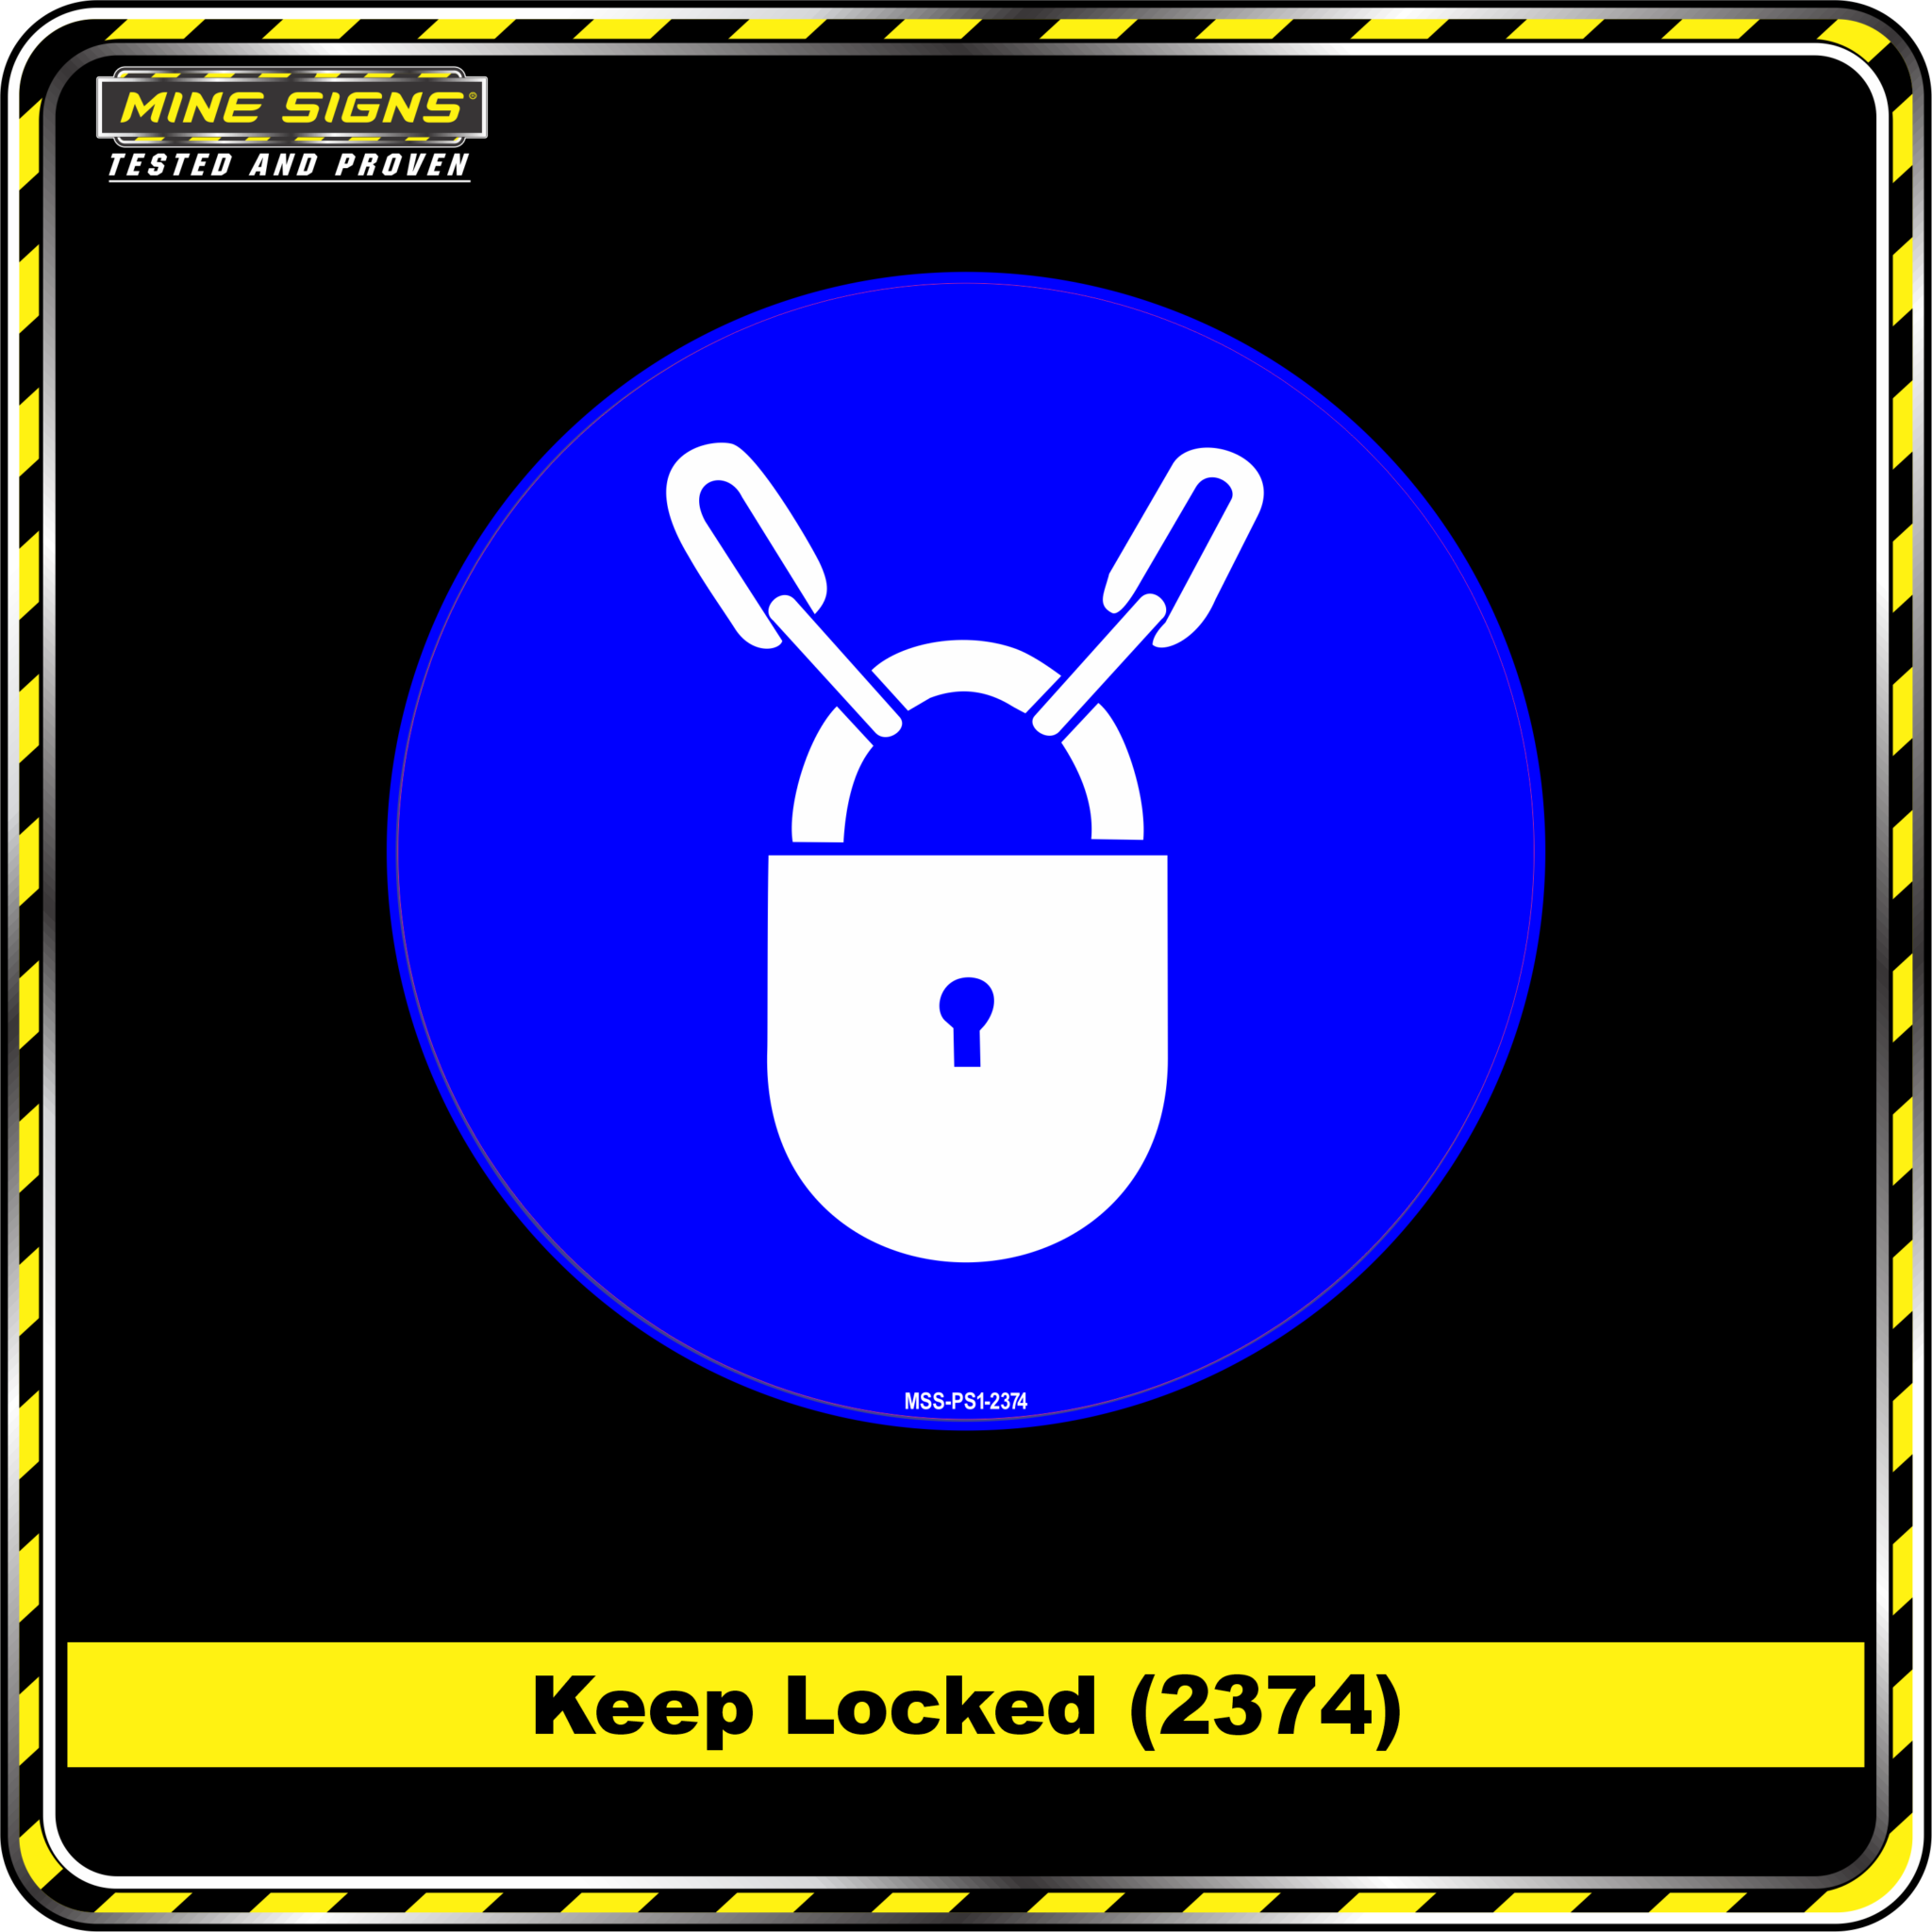 MS - Mandatory Signs - Circles - Keep Locked - 2374